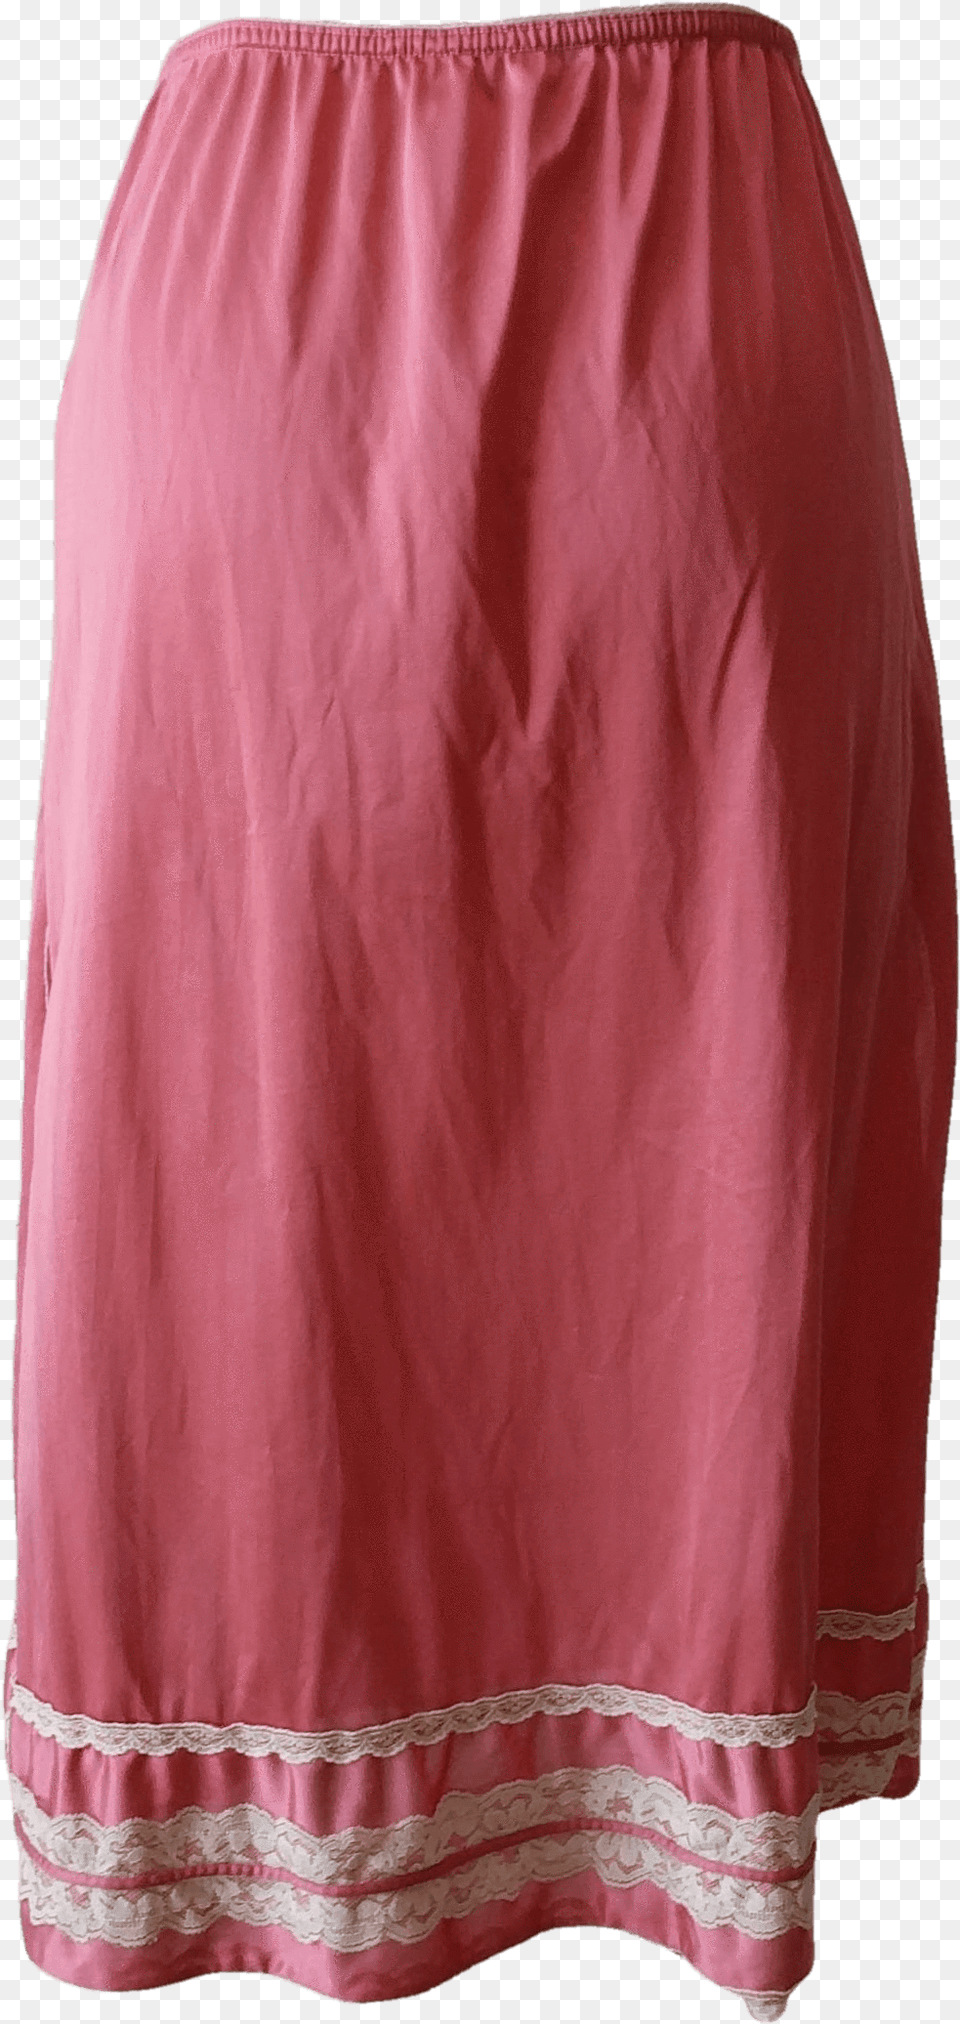 Lingerie Petticoat Pink Nylon Skirt, Clothing, Miniskirt, Adult, Female Free Png